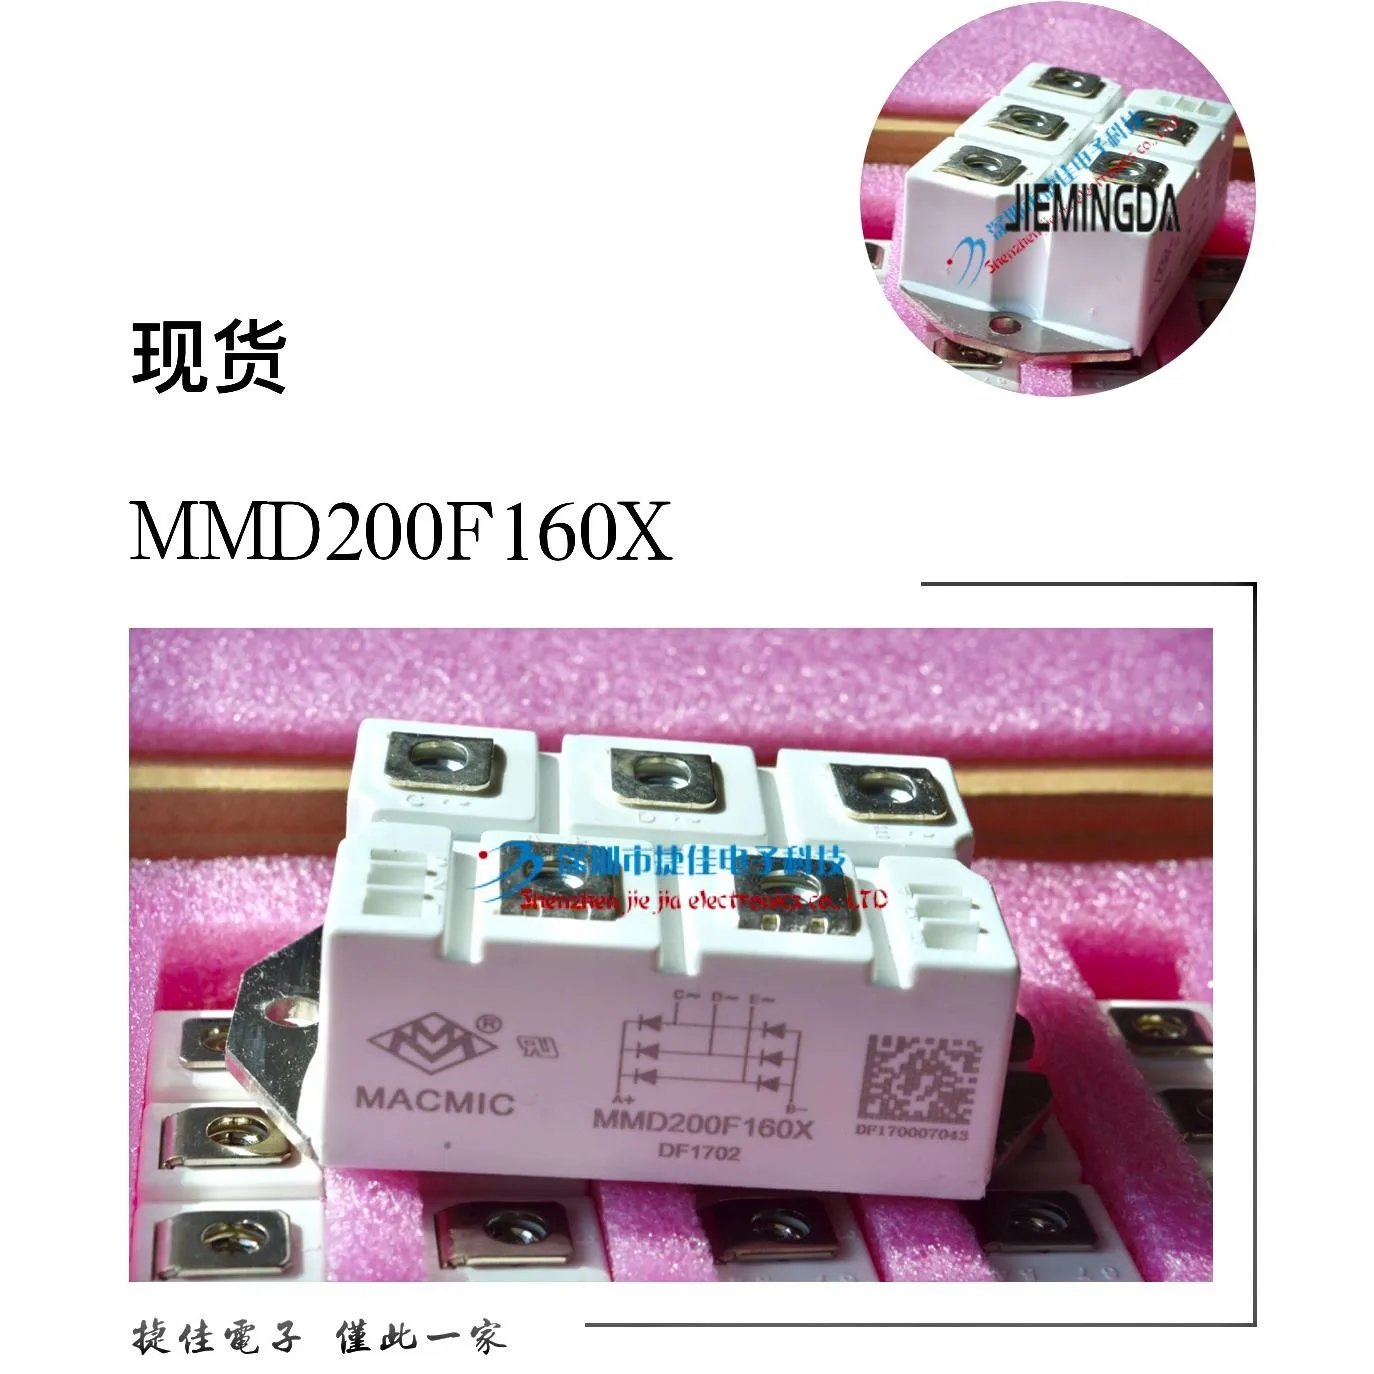 MSD130-16 MSD160-16 MSD100-16 MDS200-16 MMD150F160X 100% nauji ir originalūs - 3